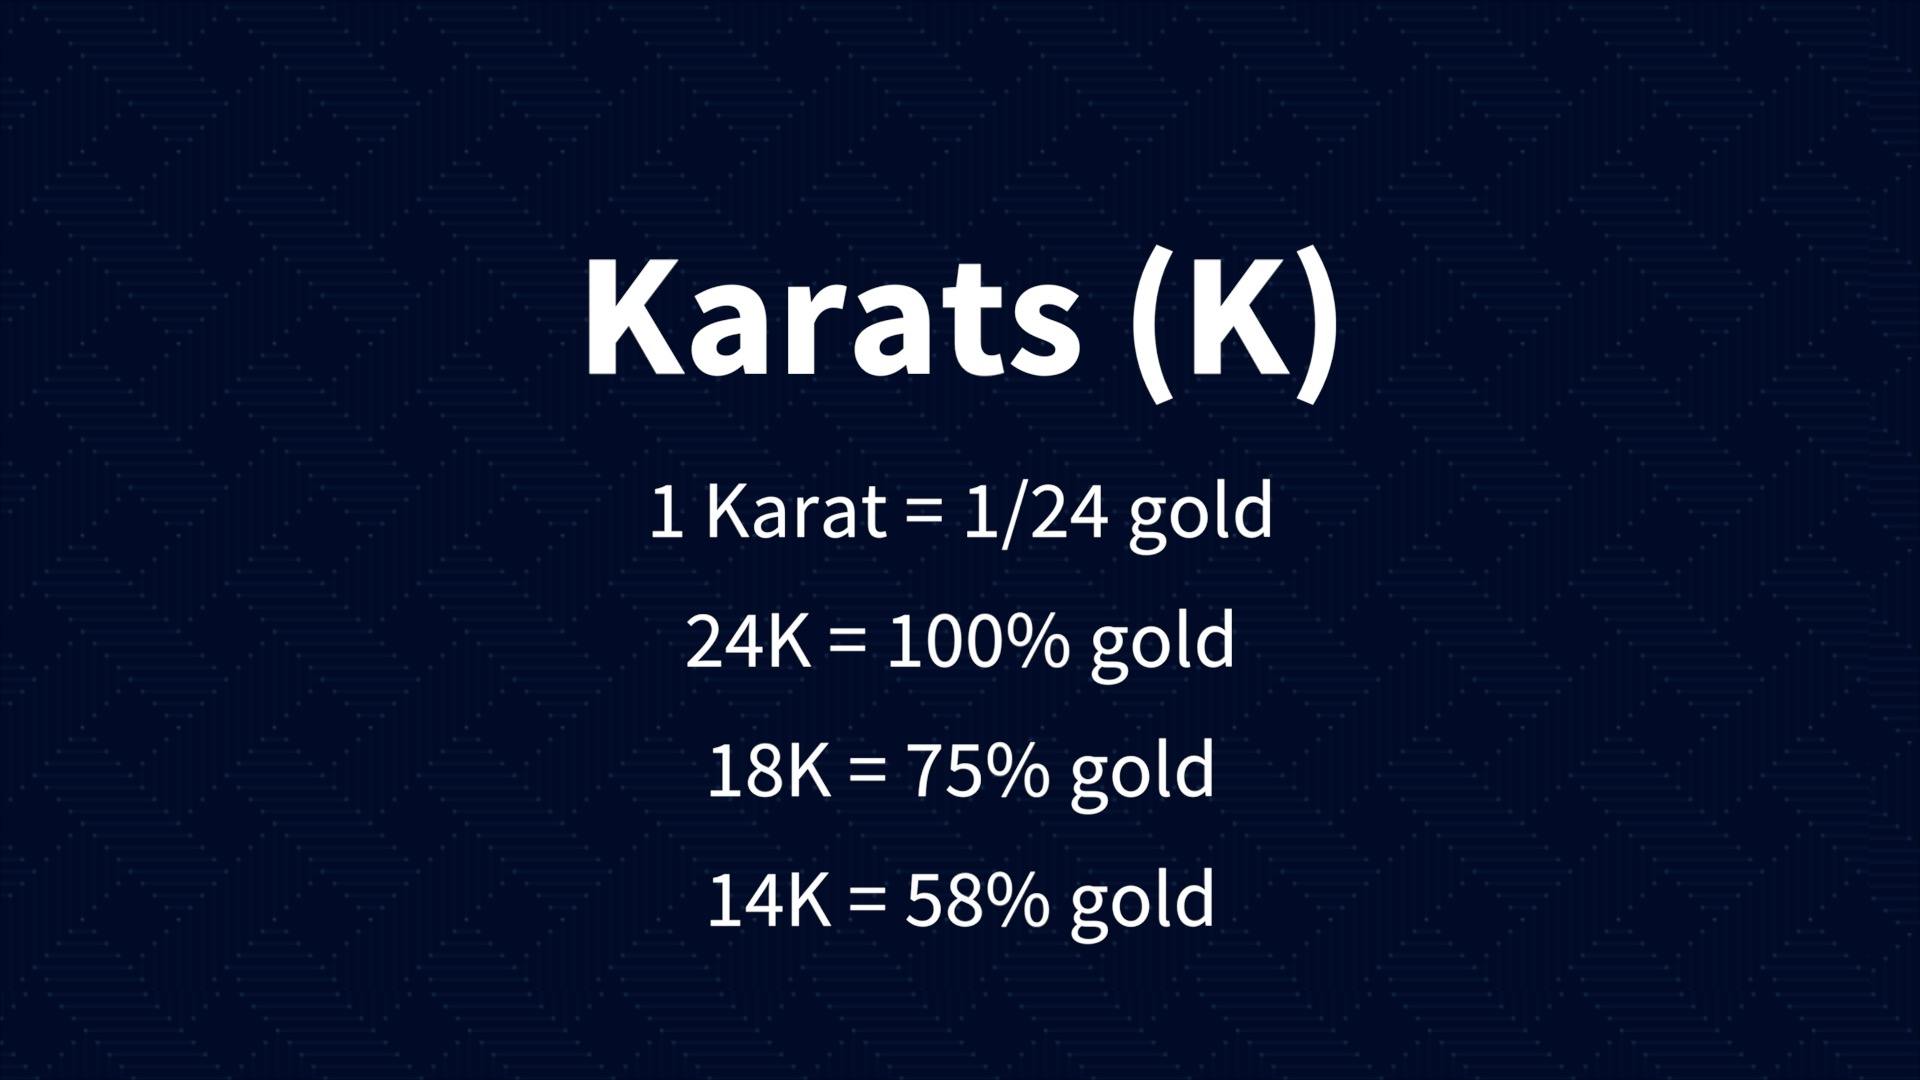 Gold karats explained